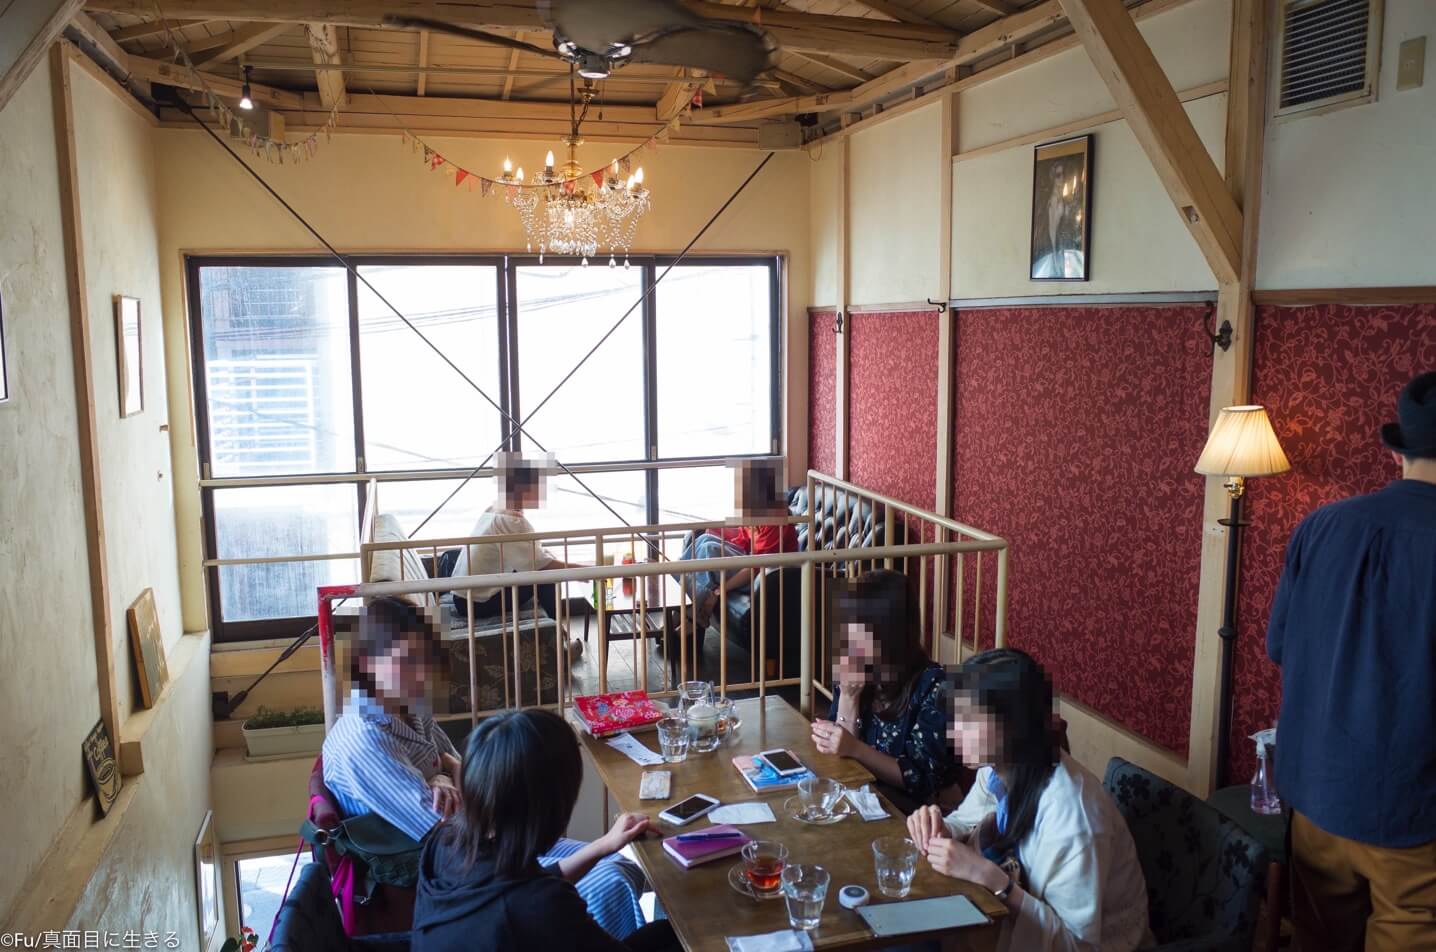 渋谷「宇田川カフェ suite」東急百貨店近く 路地裏の隠れ家・一軒家カフェは長居にオススメ